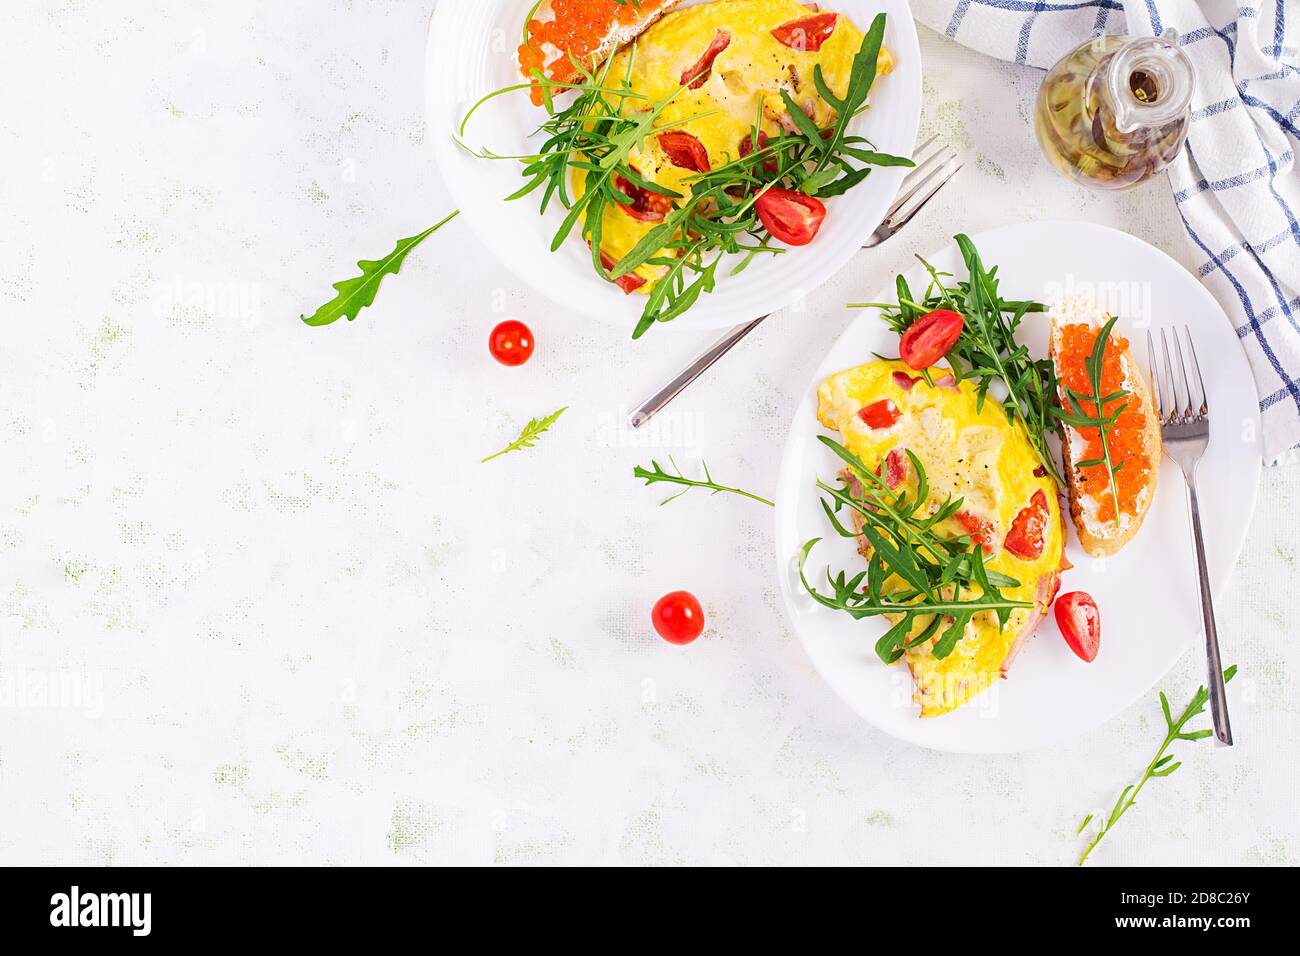 Omelette aux tomates, fromage, jambon et sandwich au cavier rouge sur l'assiette. Frittata - omelette italienne. Vue de dessus, au-dessus de la tête, espace de copie Banque D'Images